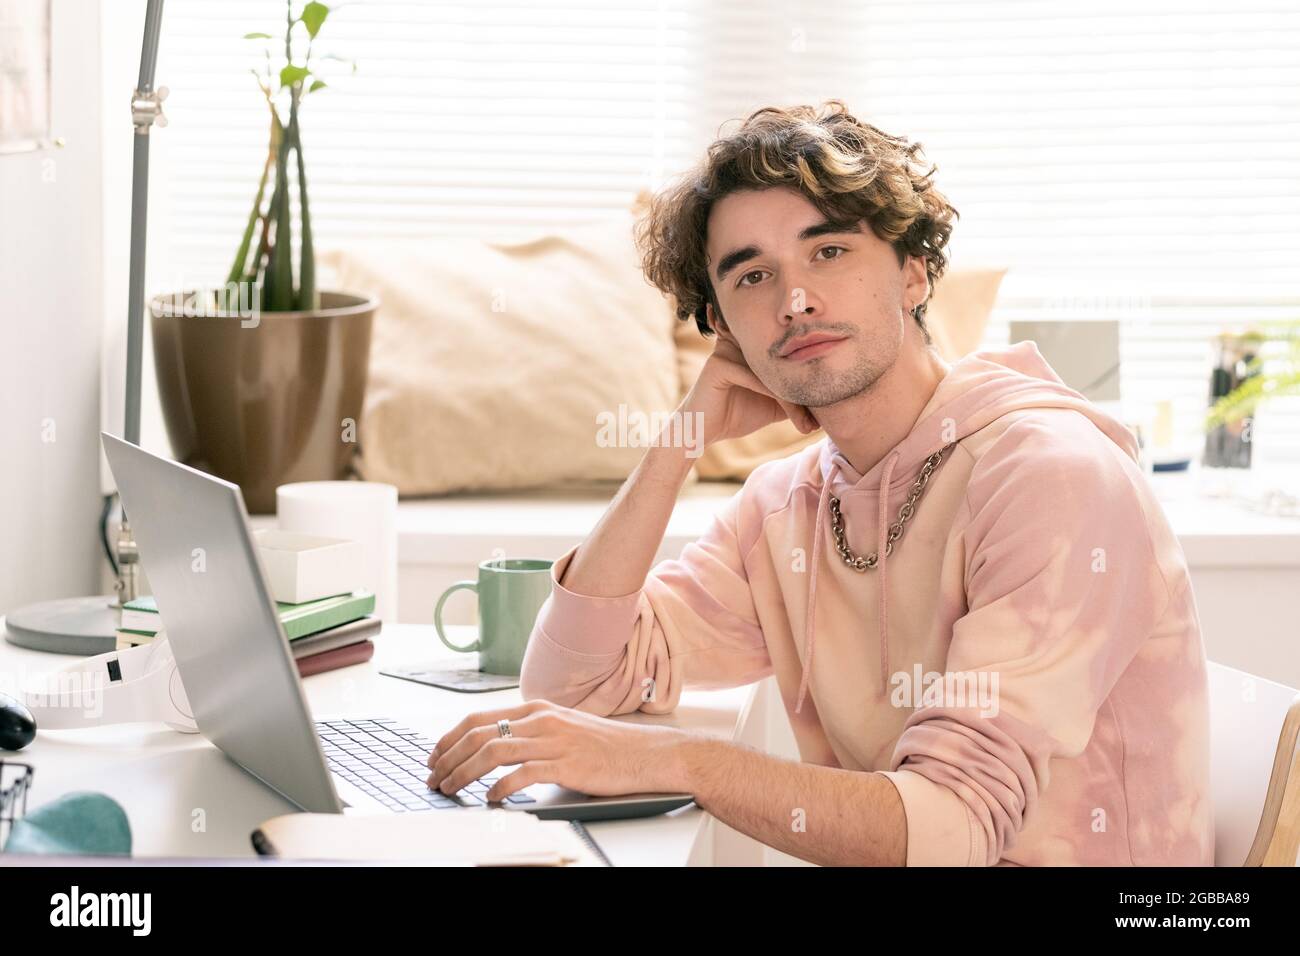 Ein hübscher Teenager in pinkem Hoodie, der im Wohnzimmer neben dem Schreibtisch sitzt Stockfoto